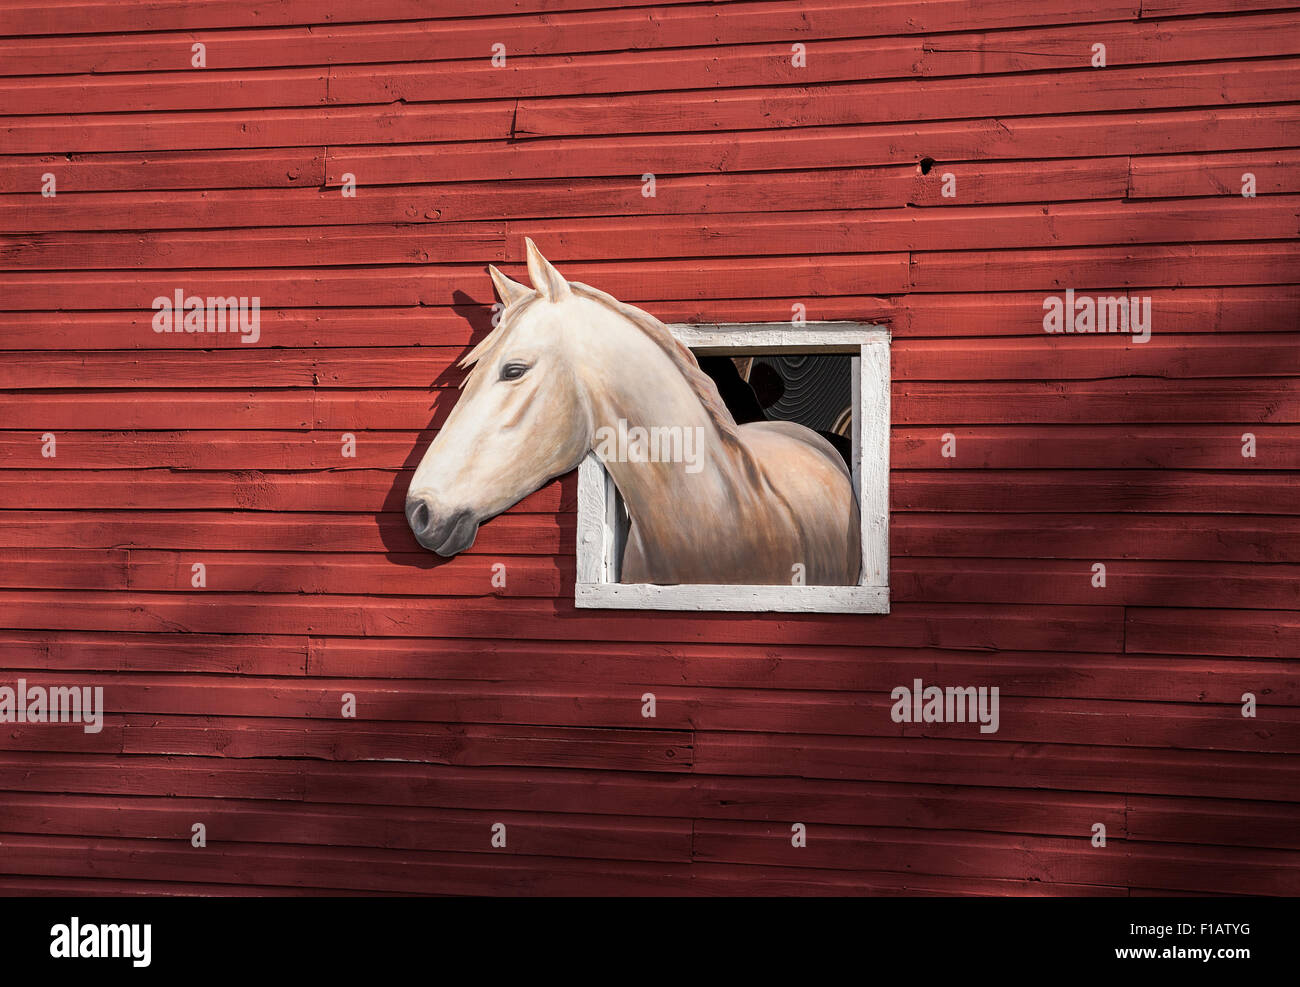 Schließen Sie die rote Scheune Wand in ein Bauernhof mit einem weißen Pferd Kunst im Fenster auf einem Bauernhof, Vermont, New England, winter Datei Sz. 9,85 MB Bauernhof Tiere Stockfoto